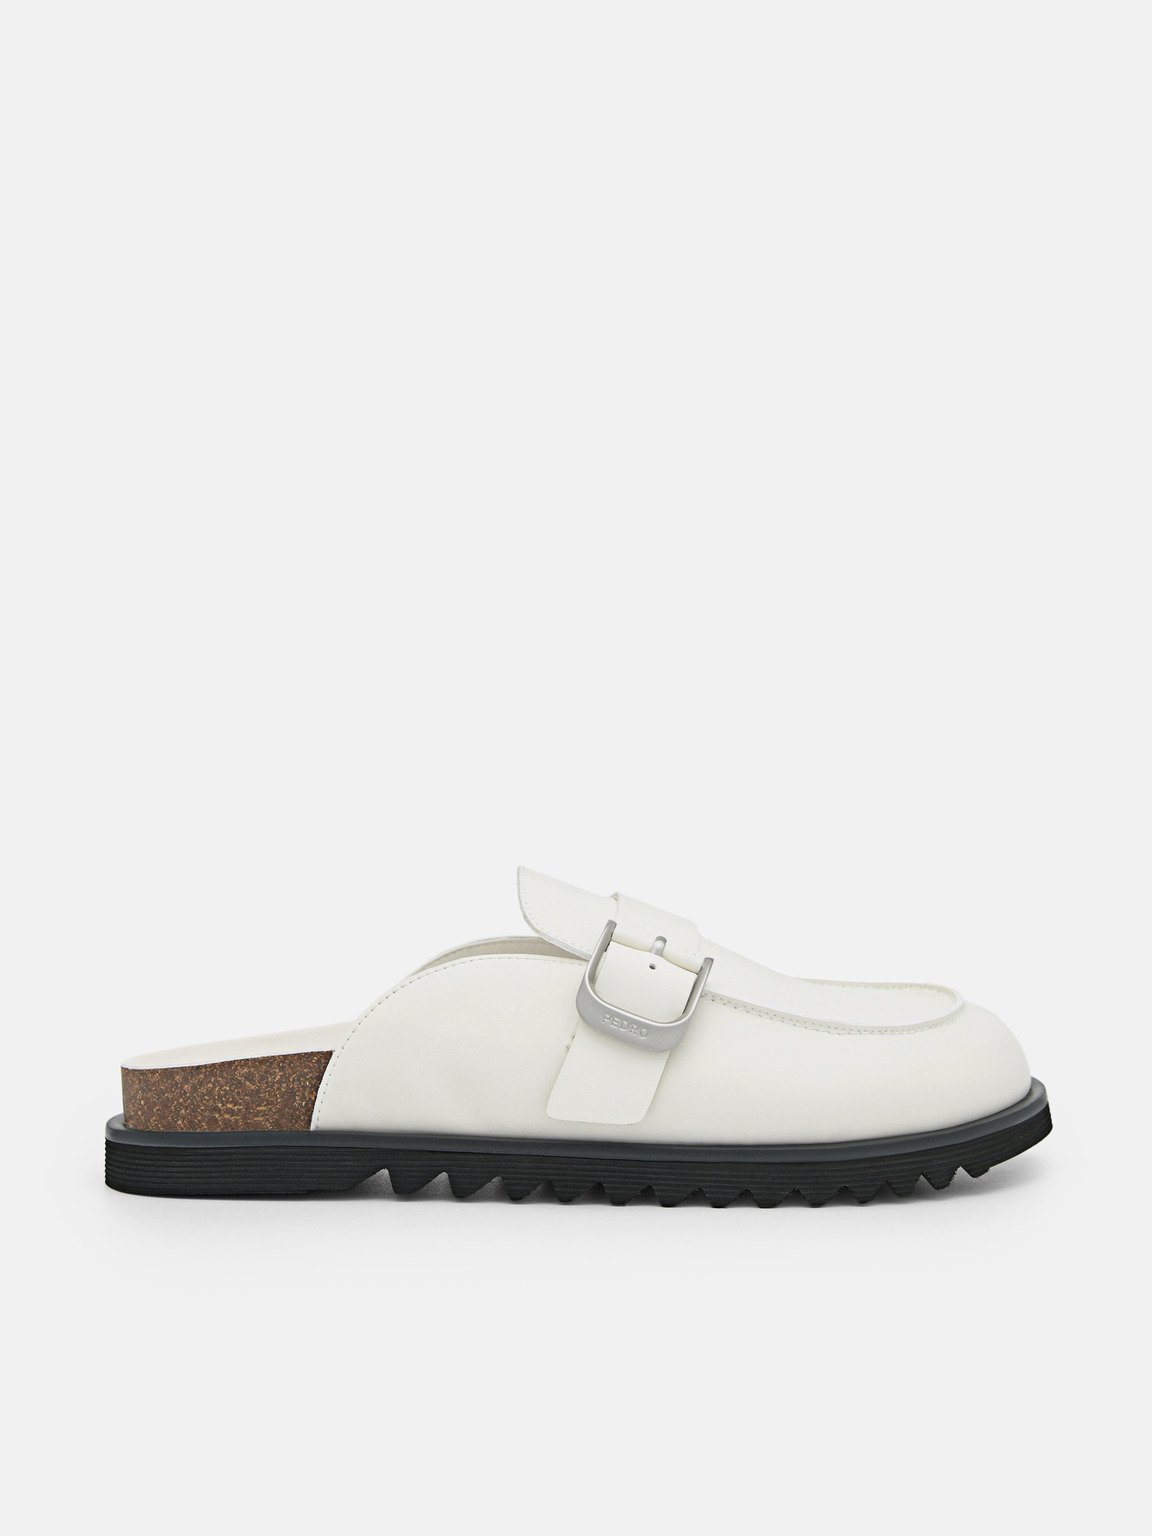 Men's Helix Slip-On Sandals, White